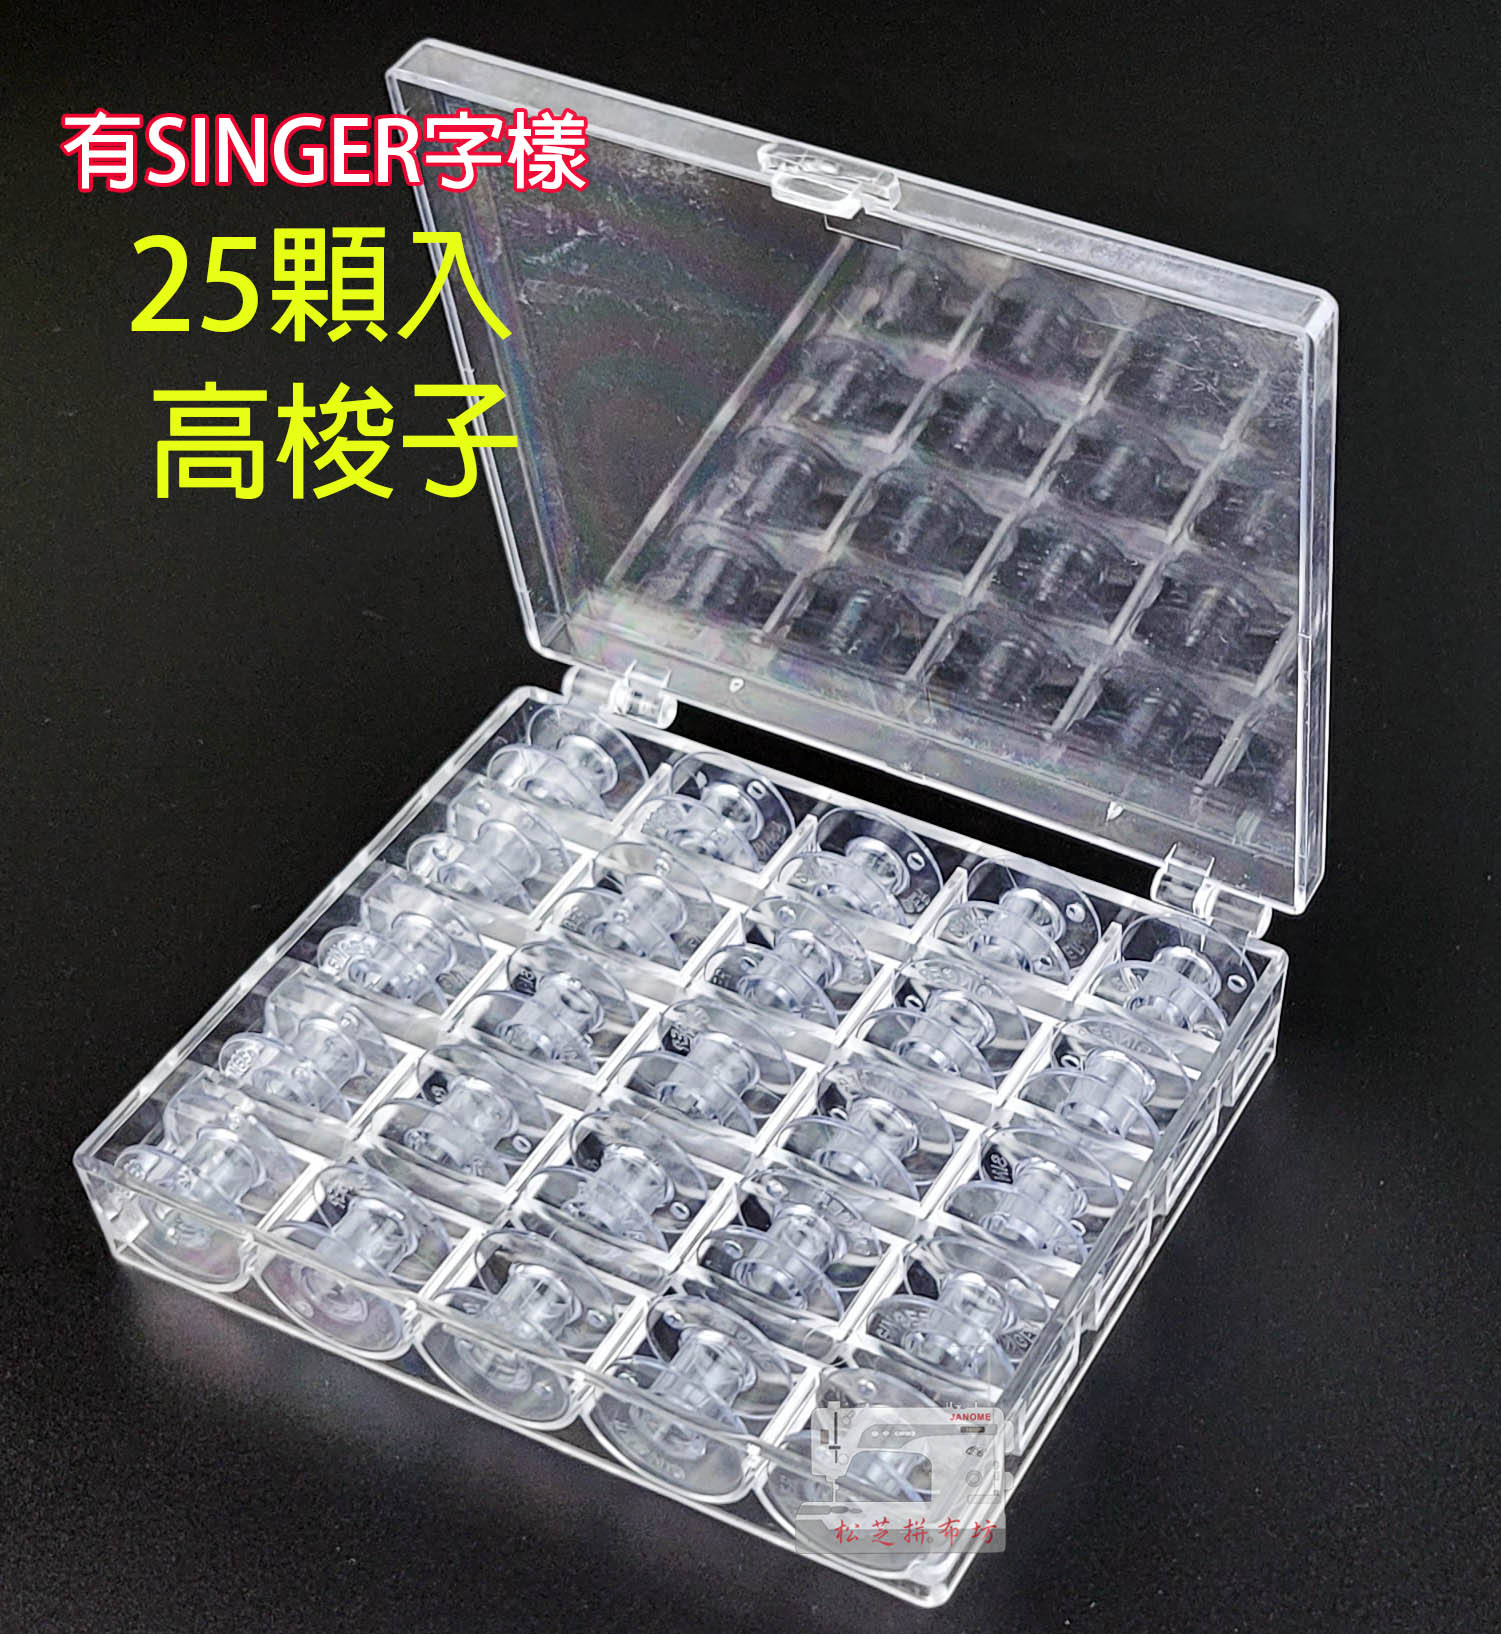 【松芝拼布坊】梭子收納盒 梭盒 含25顆 勝家專用梭子 有SINGER 字樣 高梭子 高1.1cm